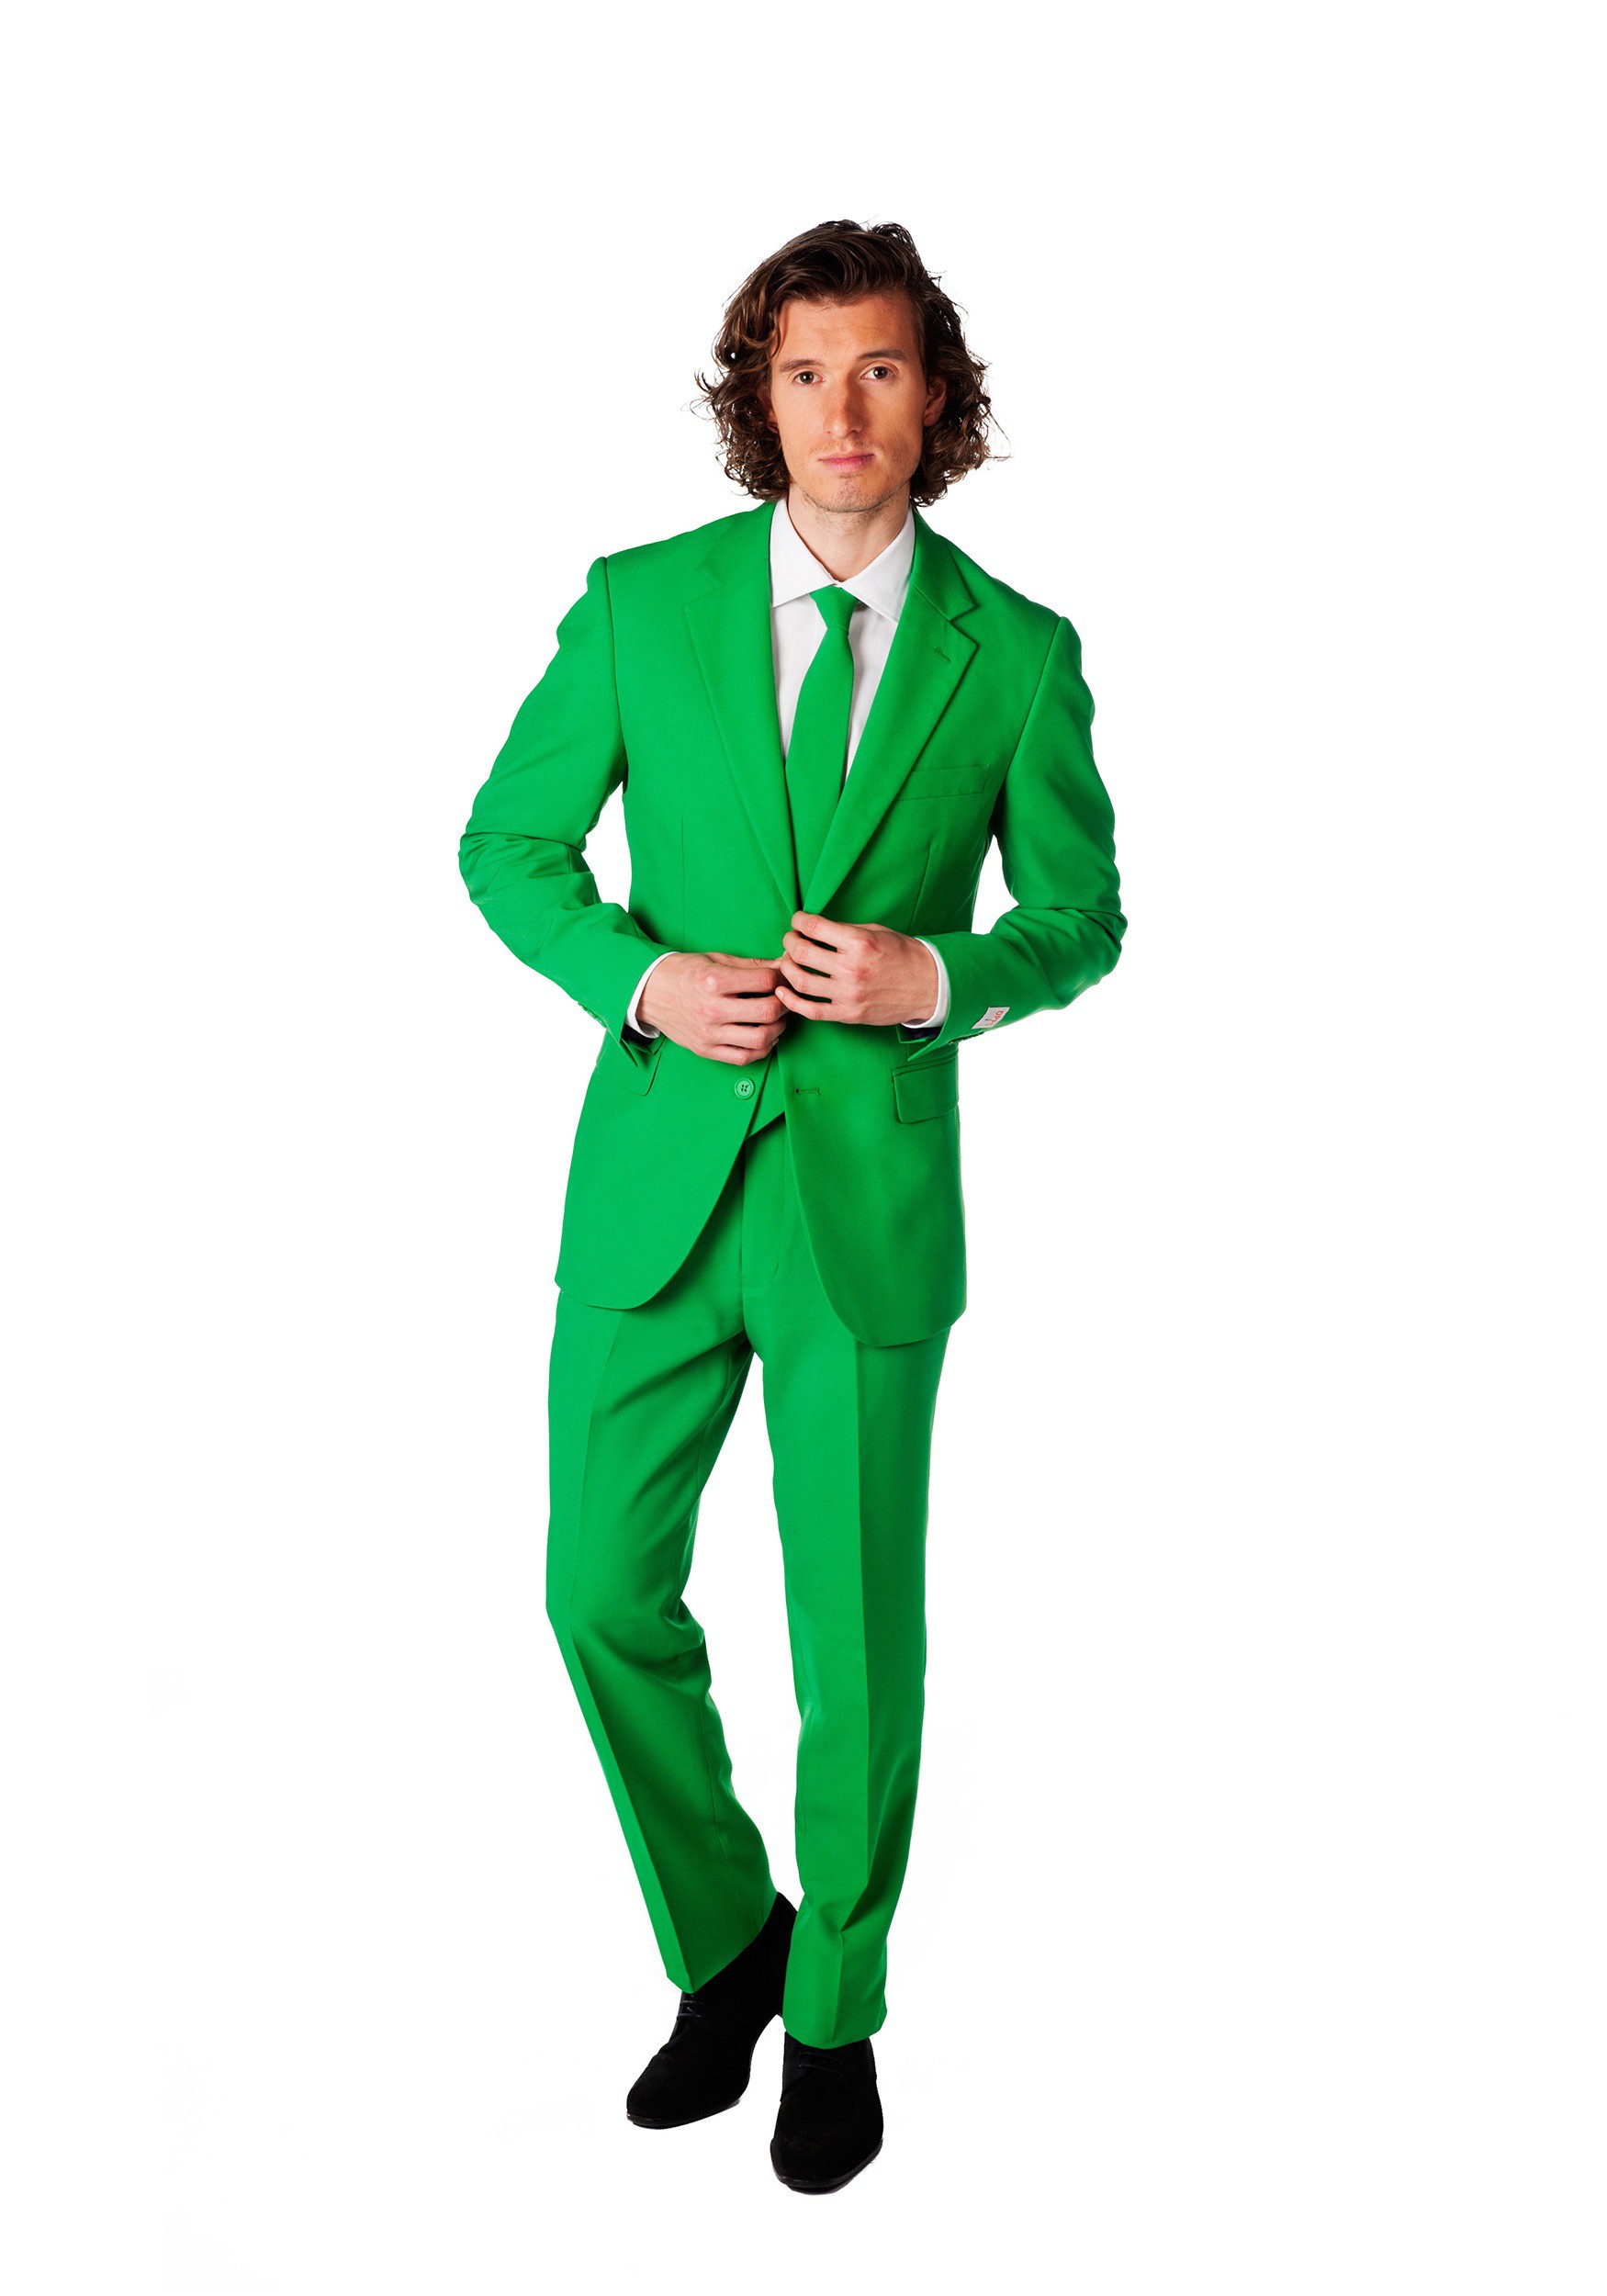 Мужчина в зеленом костюме